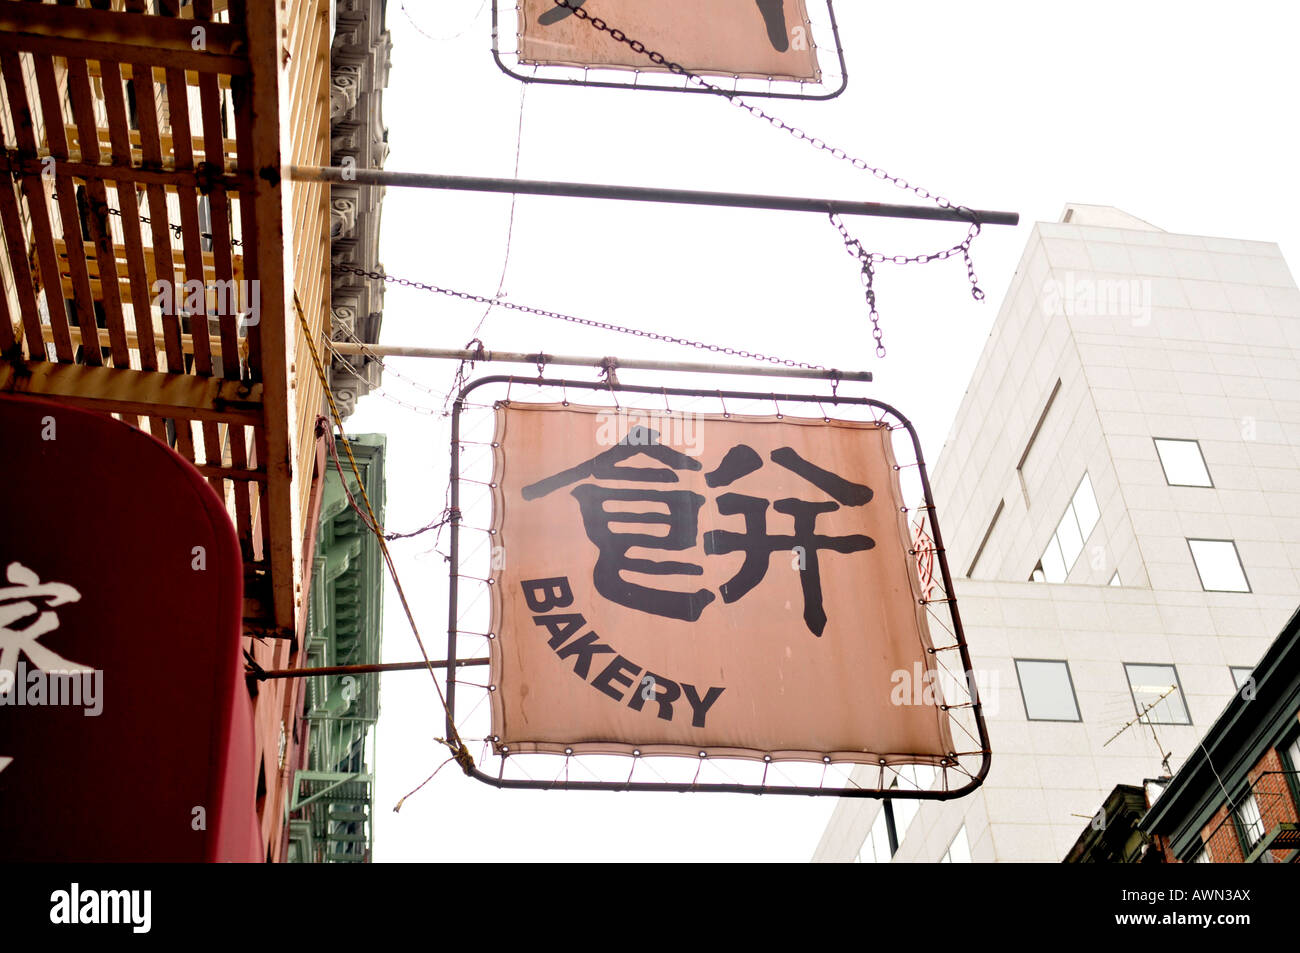 Chinese bakery, Chinatown, New York, USA Stock Photo